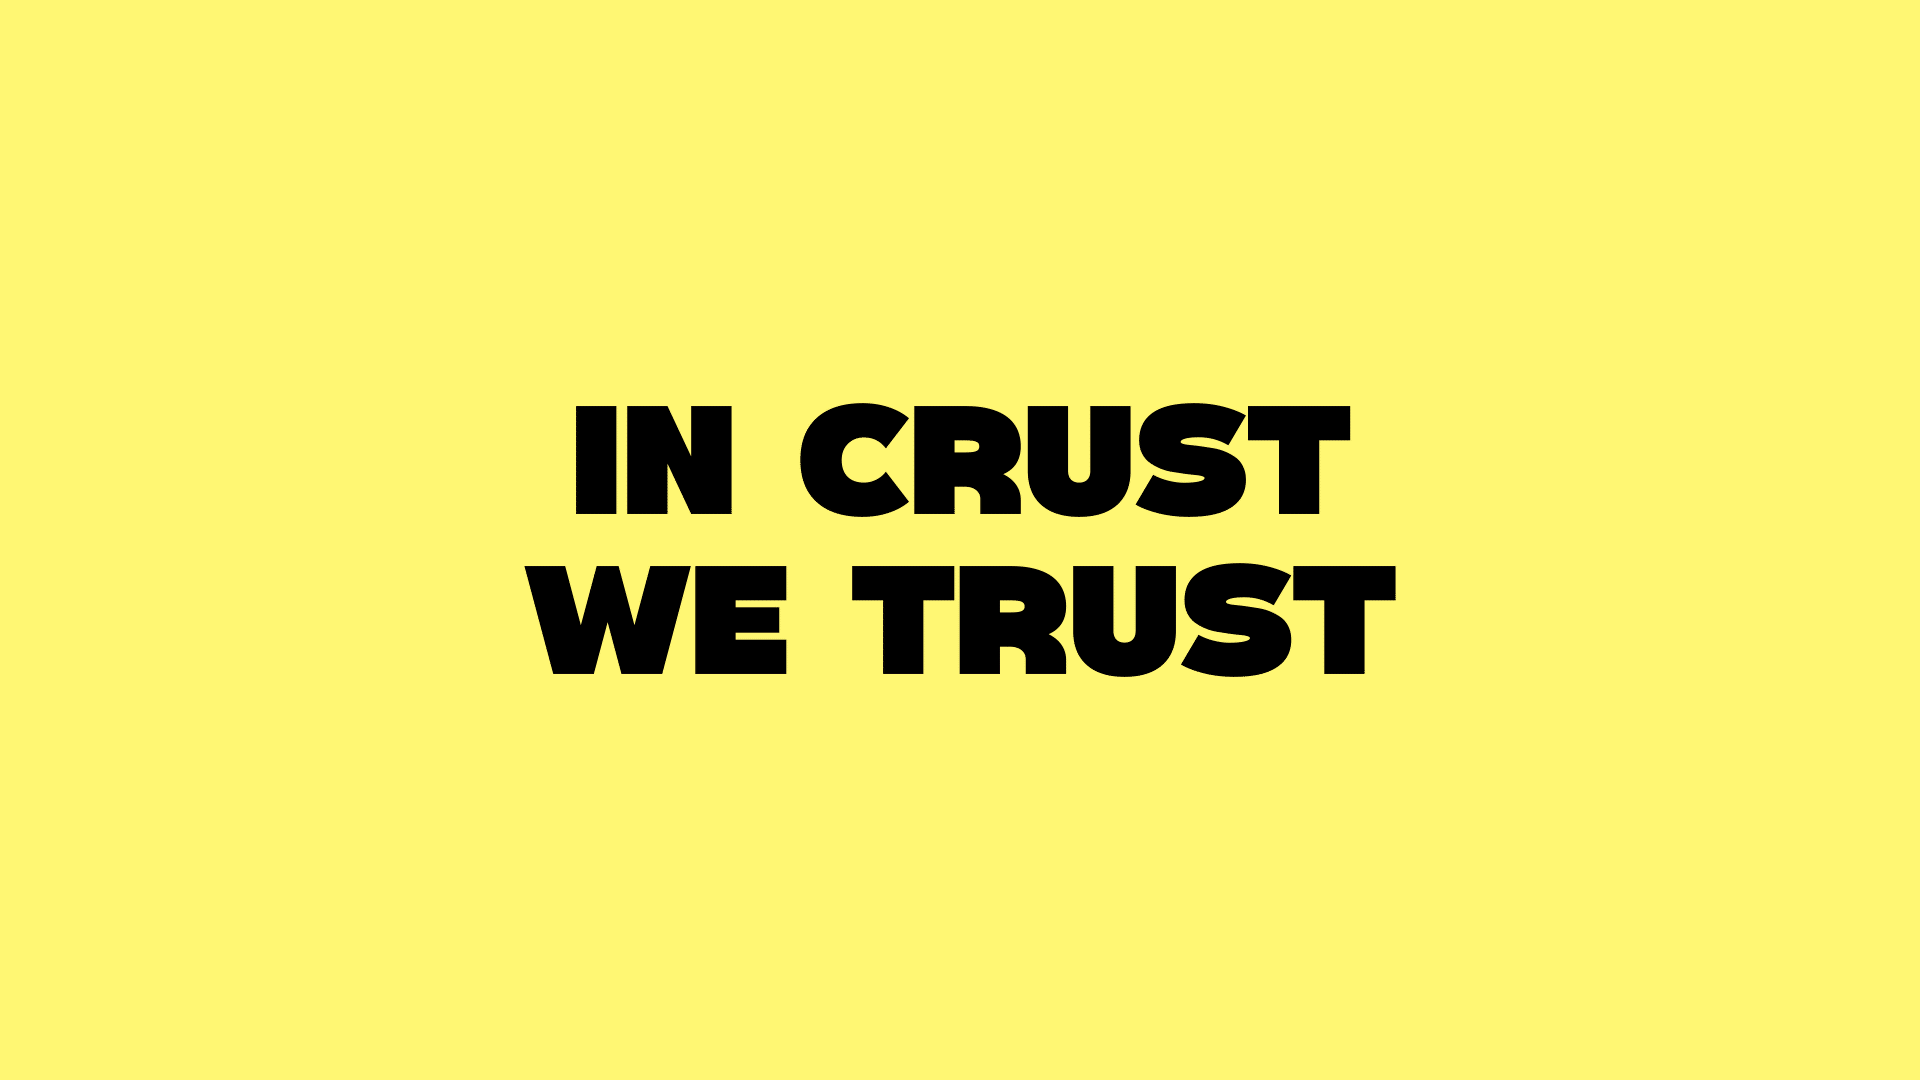 in crust we trust